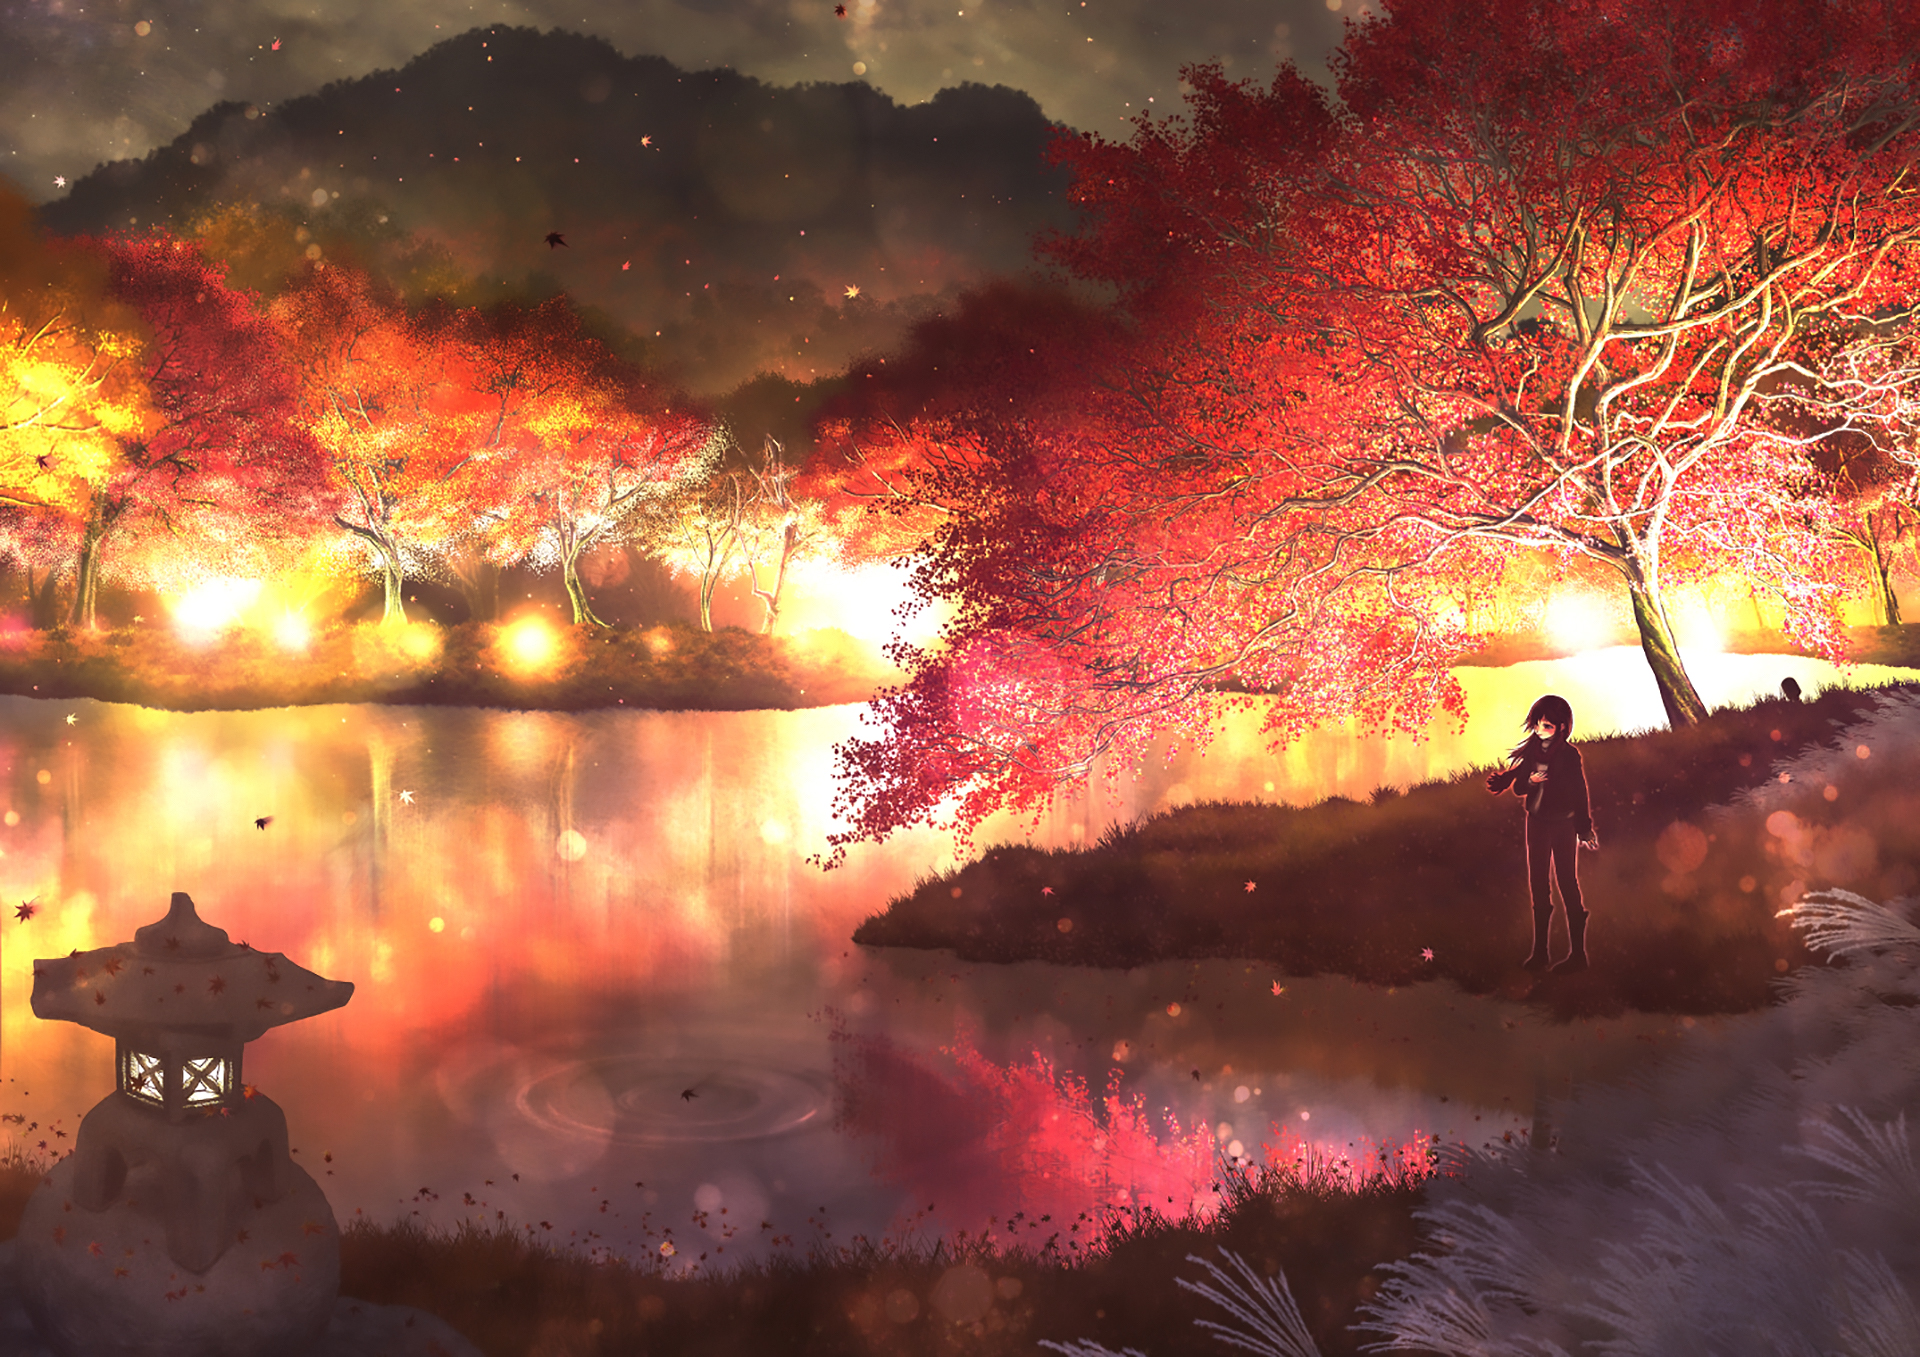 Скачать обои бесплатно Аниме, Осень, Ночь, Дерево, Оригинал картинка на рабочий стол ПК